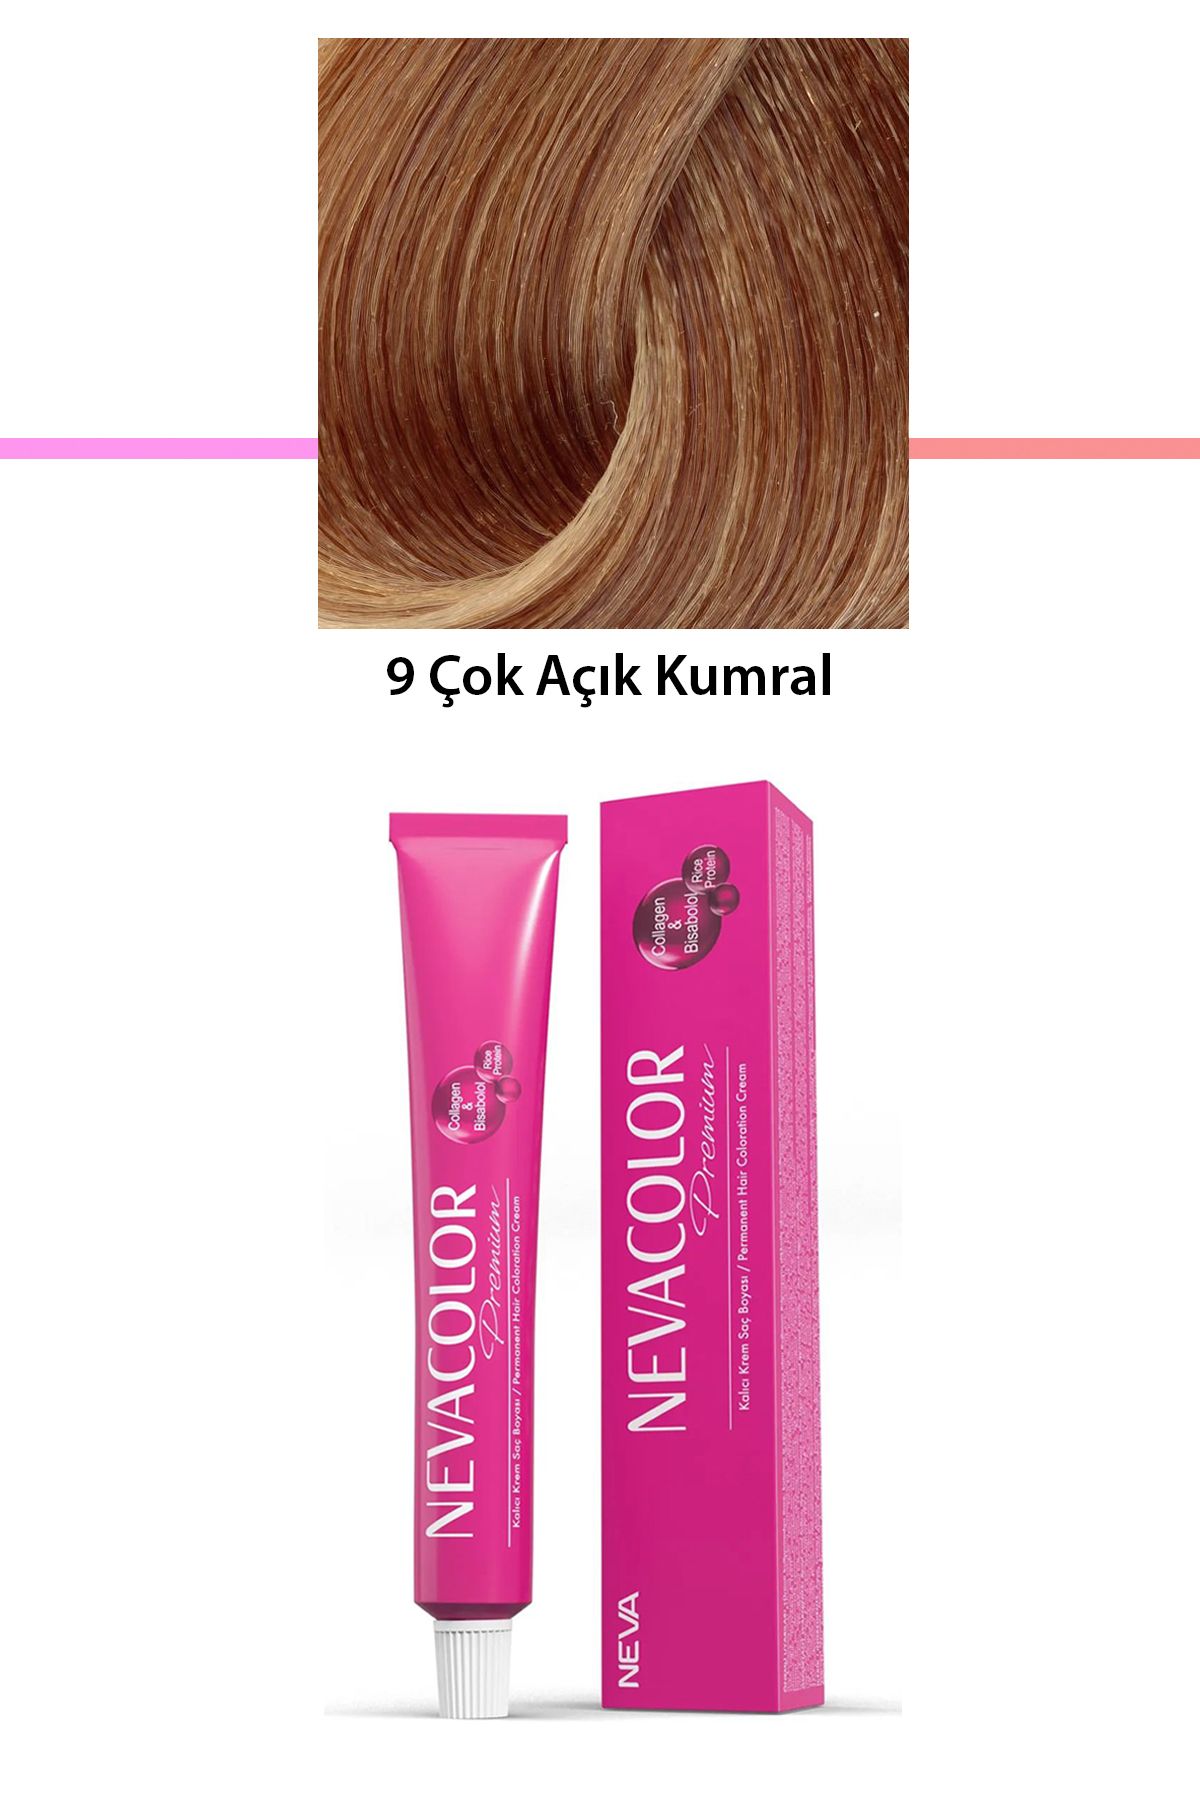 Neva Color Premium 9 Çok Açık Kumral - Kalıcı Krem Saç Boyası 50 g Tüp